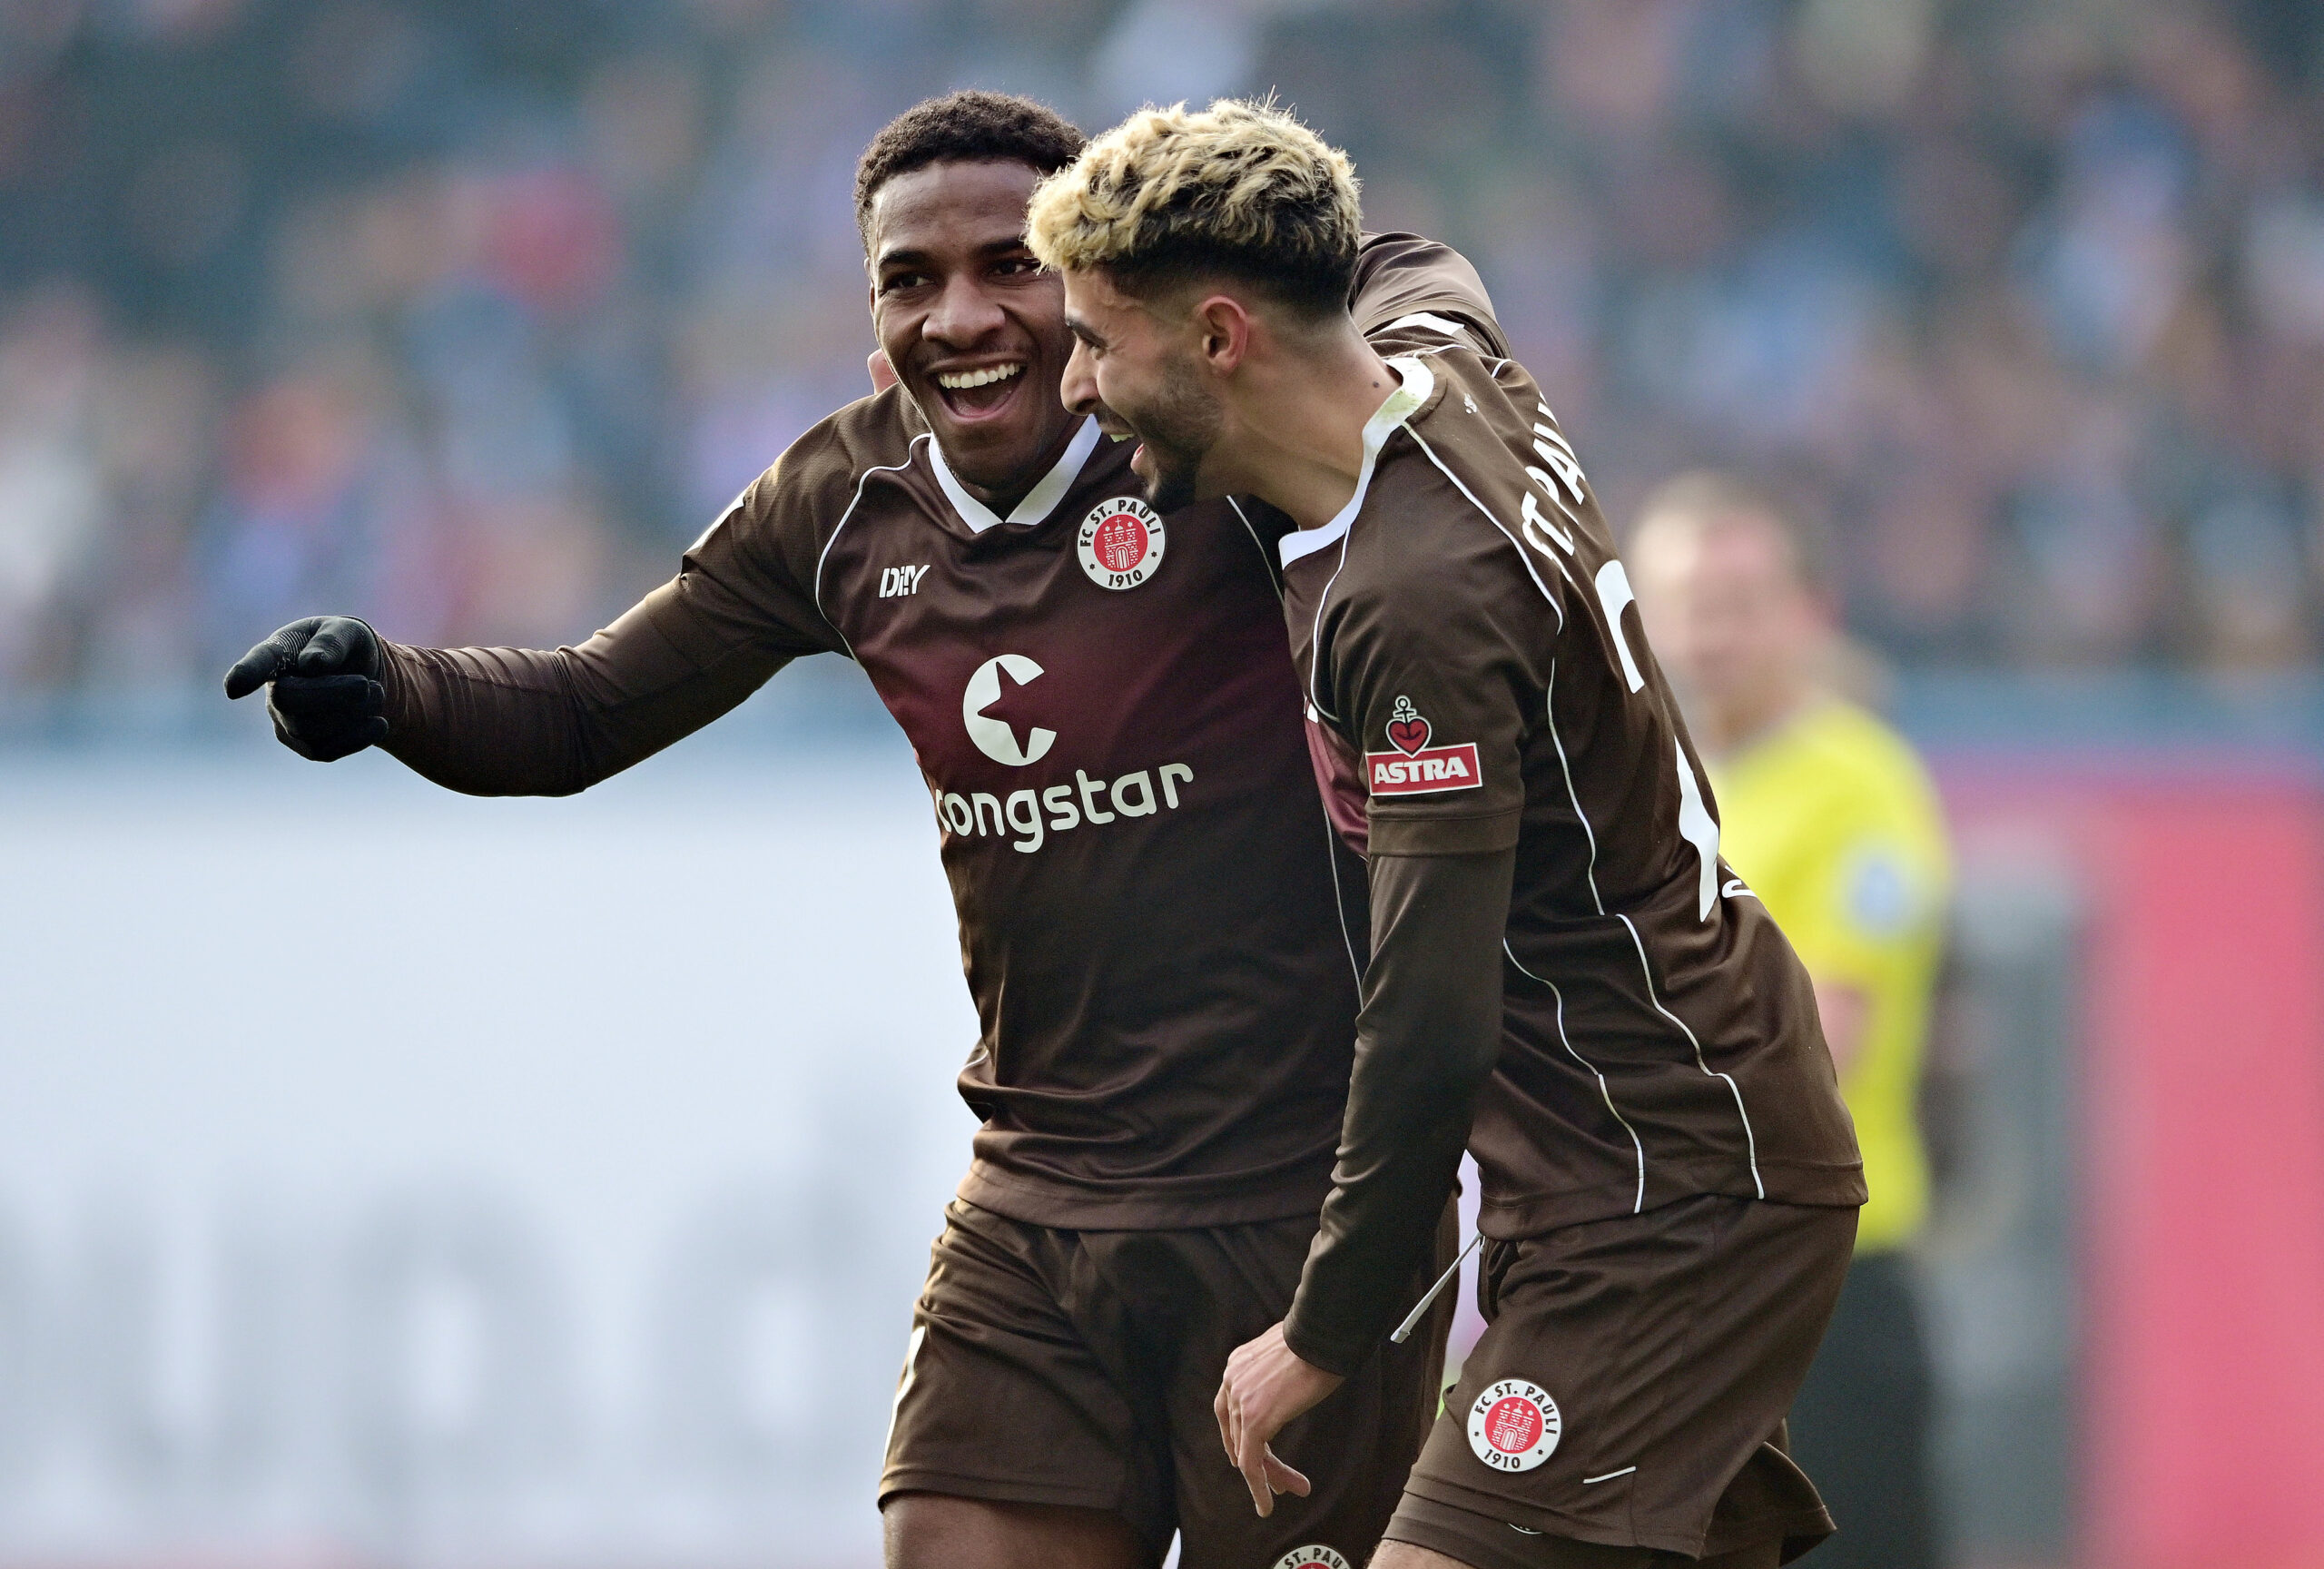 Oladapo Afolayan und Elias Saad bejubeln einen St. Pauli-Treffer.